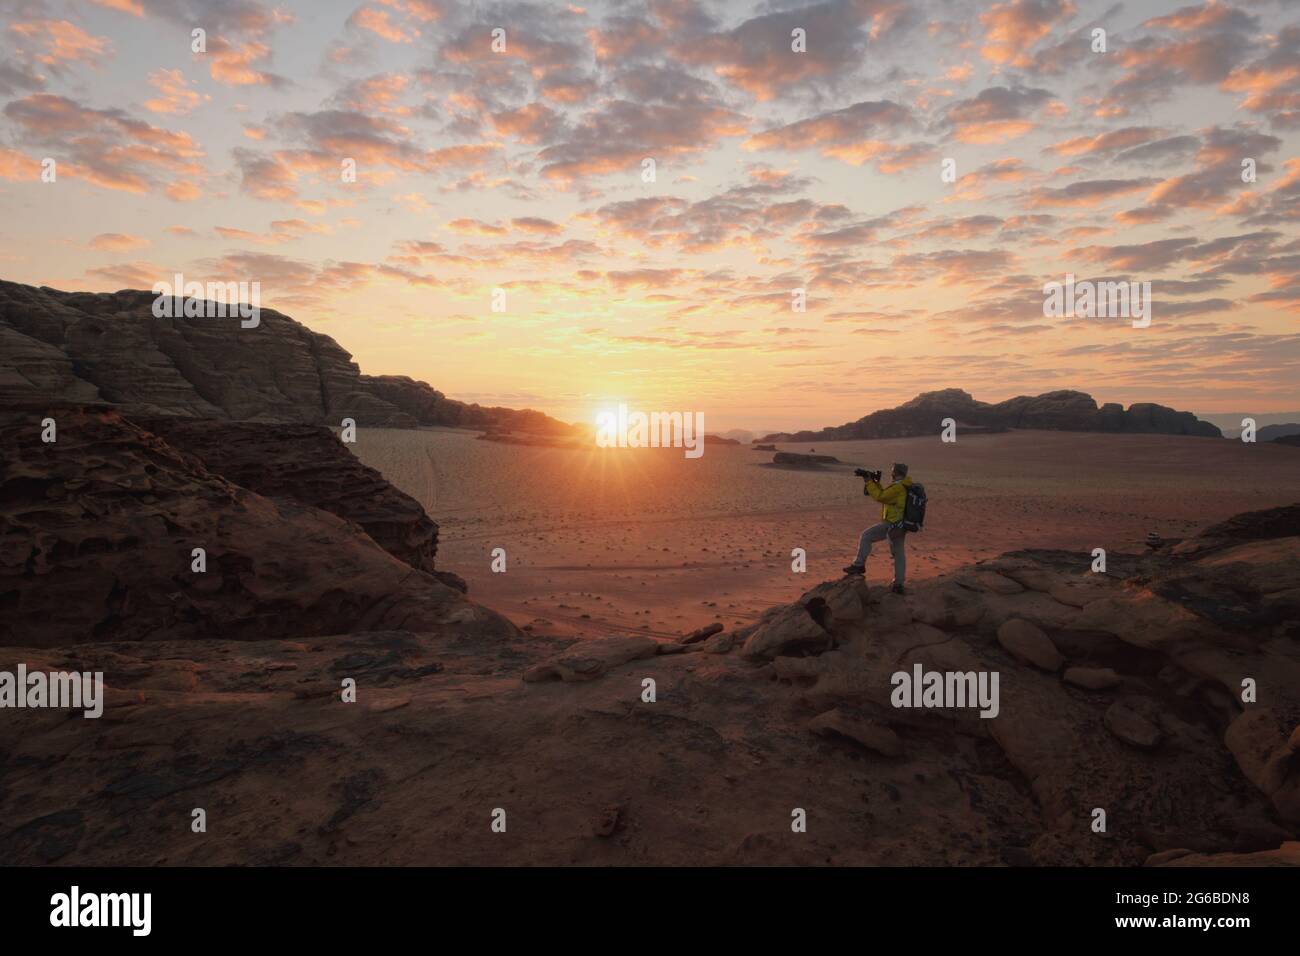 Man standing in desert taking photos at sunset, Wadi Rum, Jordan Stock Photo